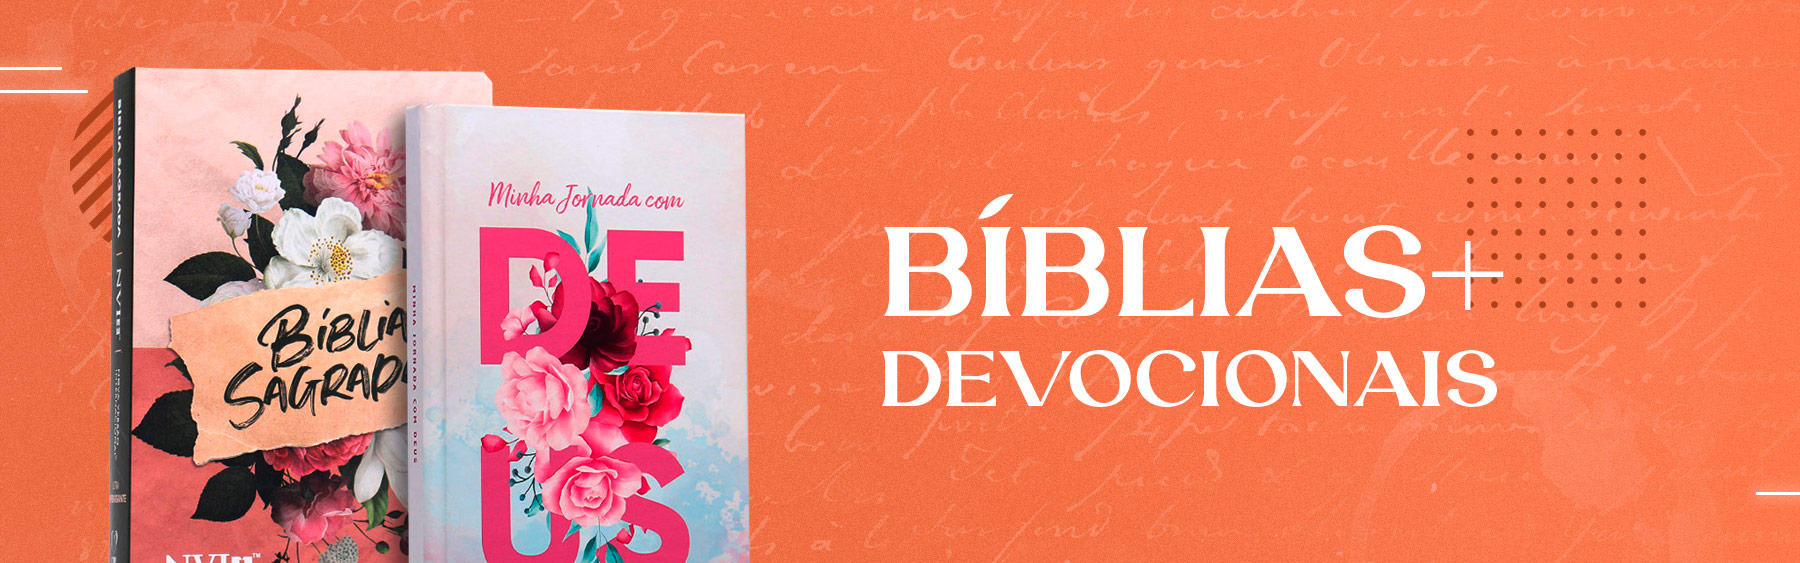 biblia e devocionais_mobile